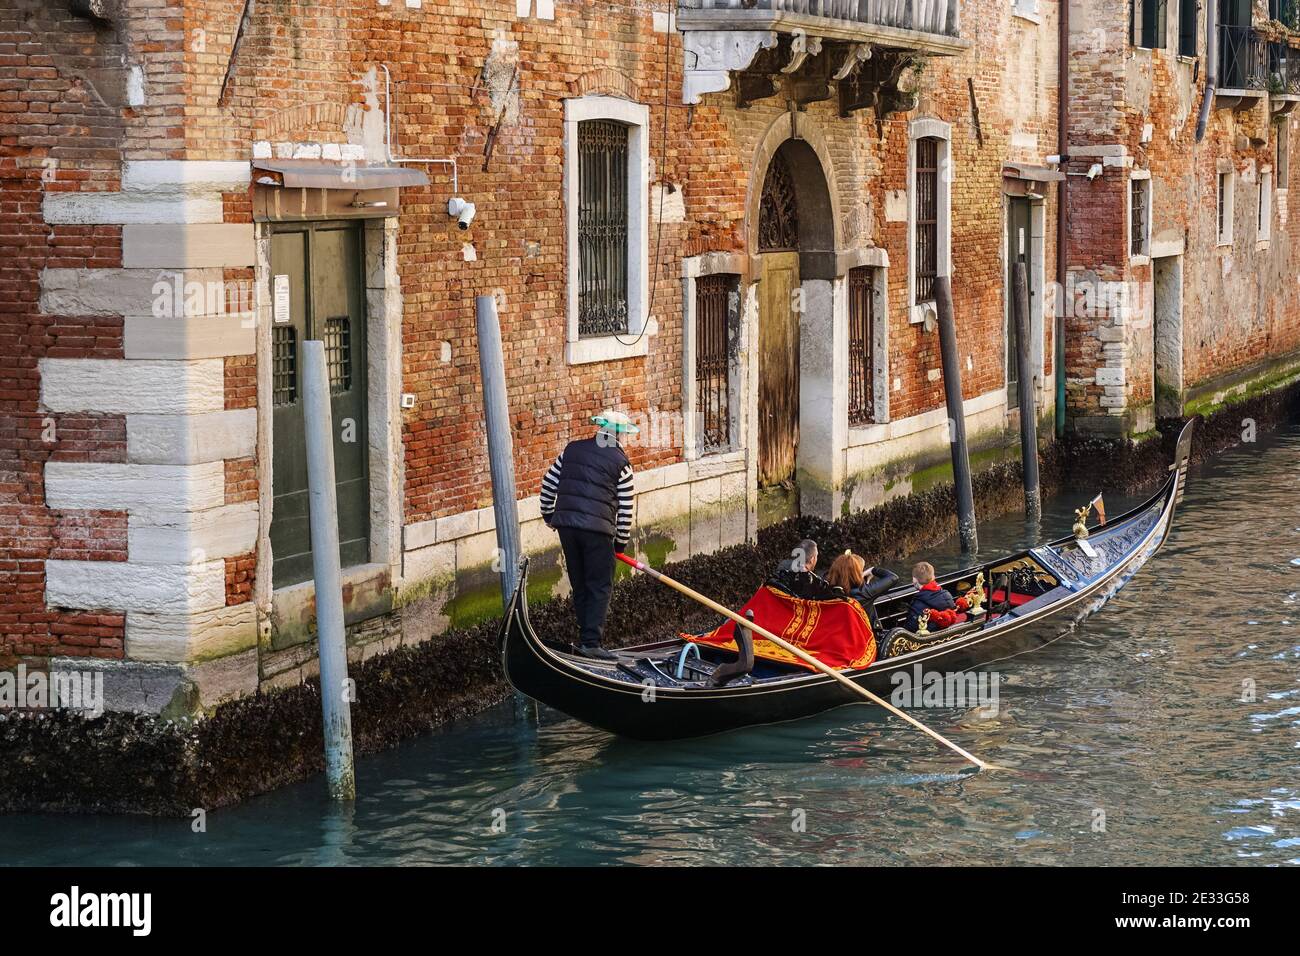 Gondole vénitienne traditionnelle avec des touristes sur un canal dans la sestière de Dorsoduro, Venise, Italie Banque D'Images